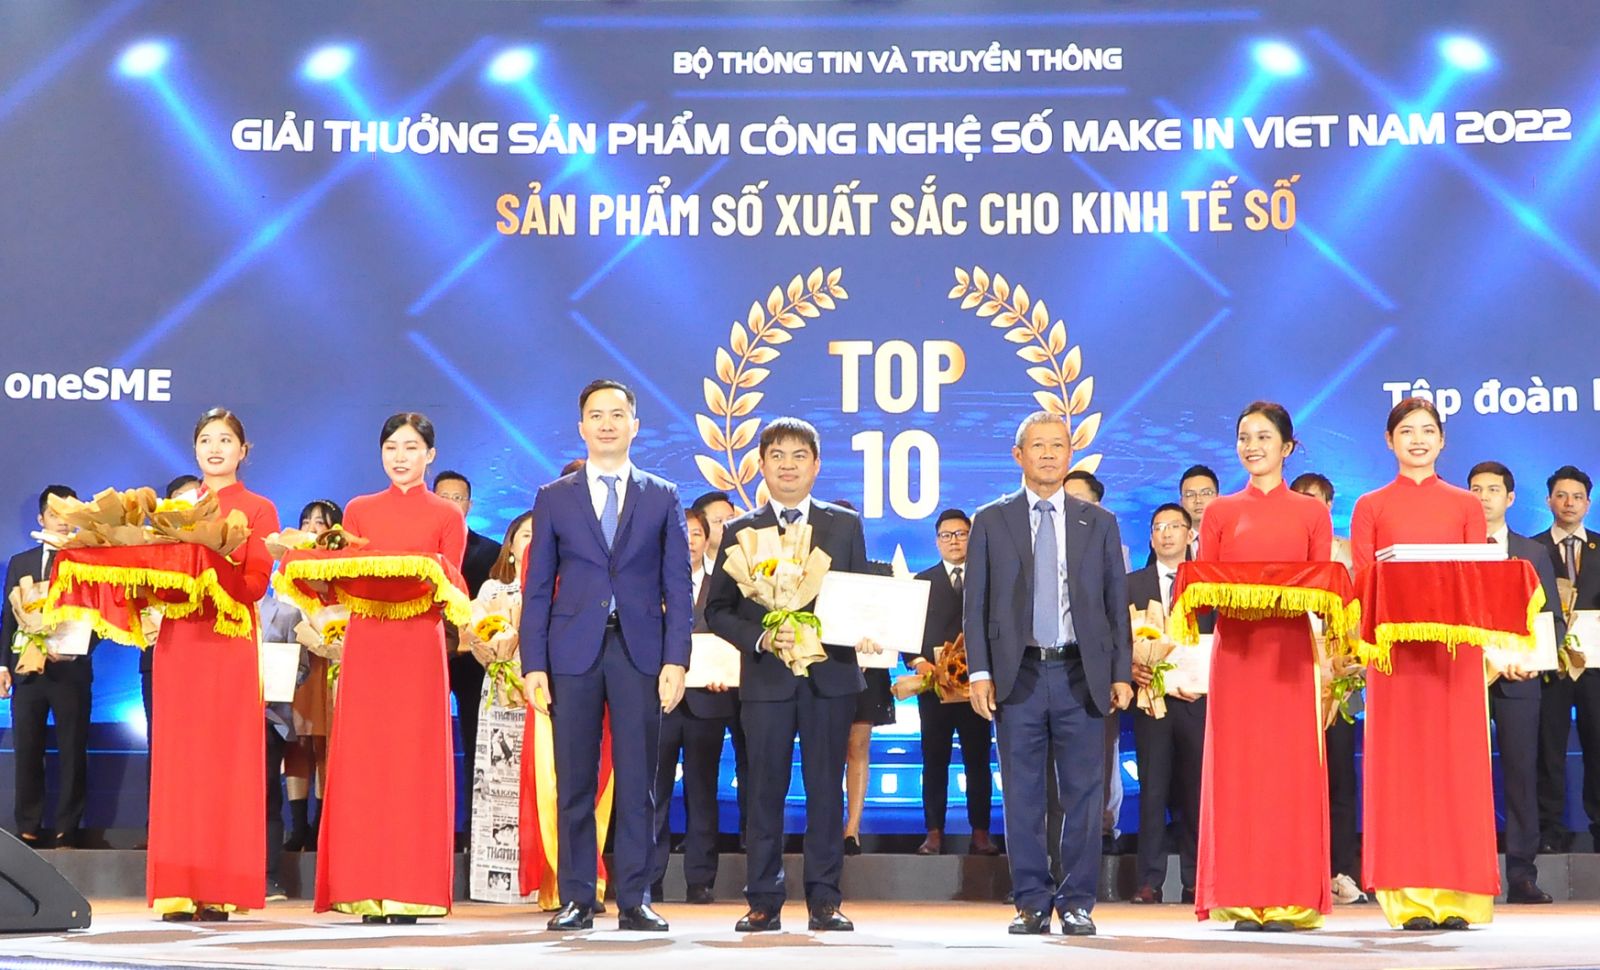 Make in Viet Nam 2022 vinh danh 4 giải pháp số của VNPT